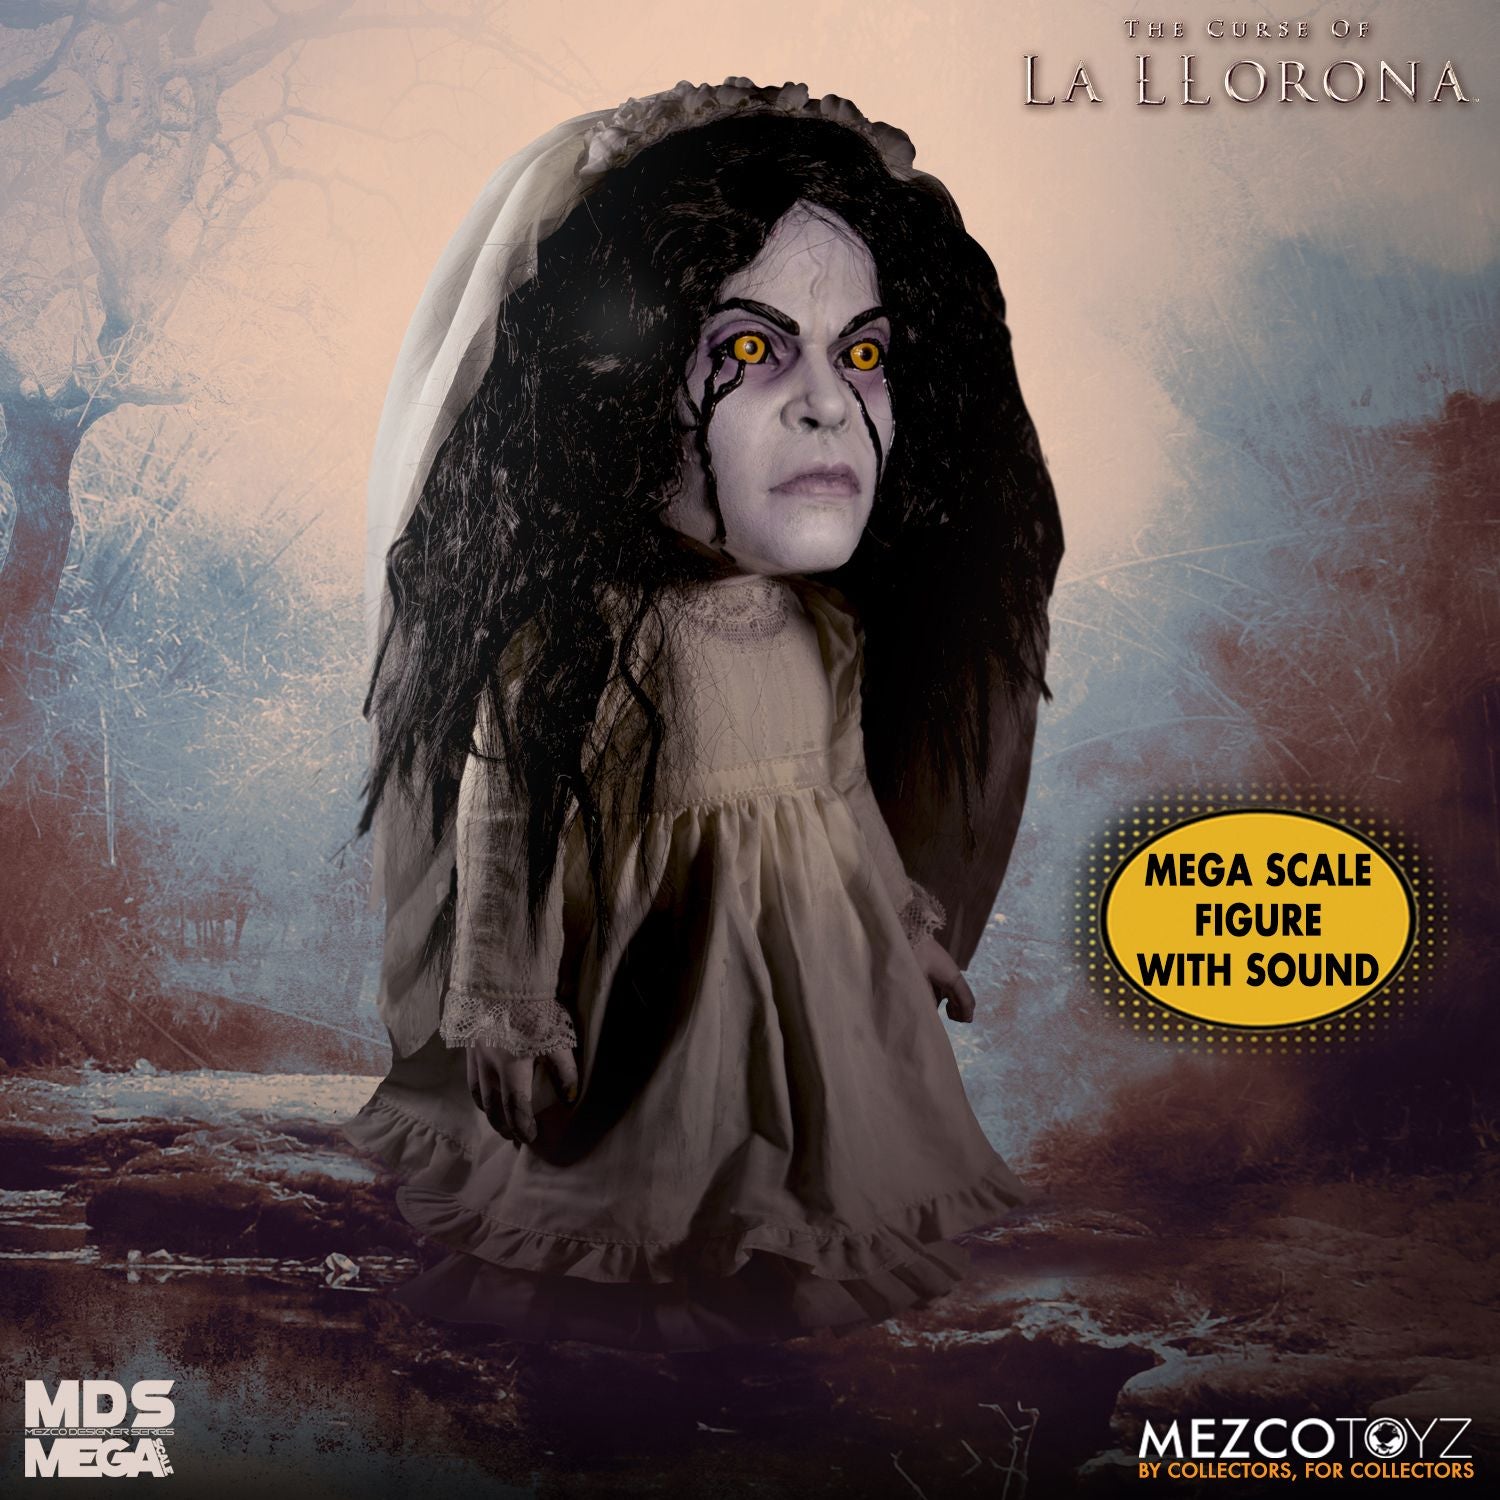 Mezco Designer Series MDS Mega Scale La Llorona Doll Figure - Collectors Row Inc.